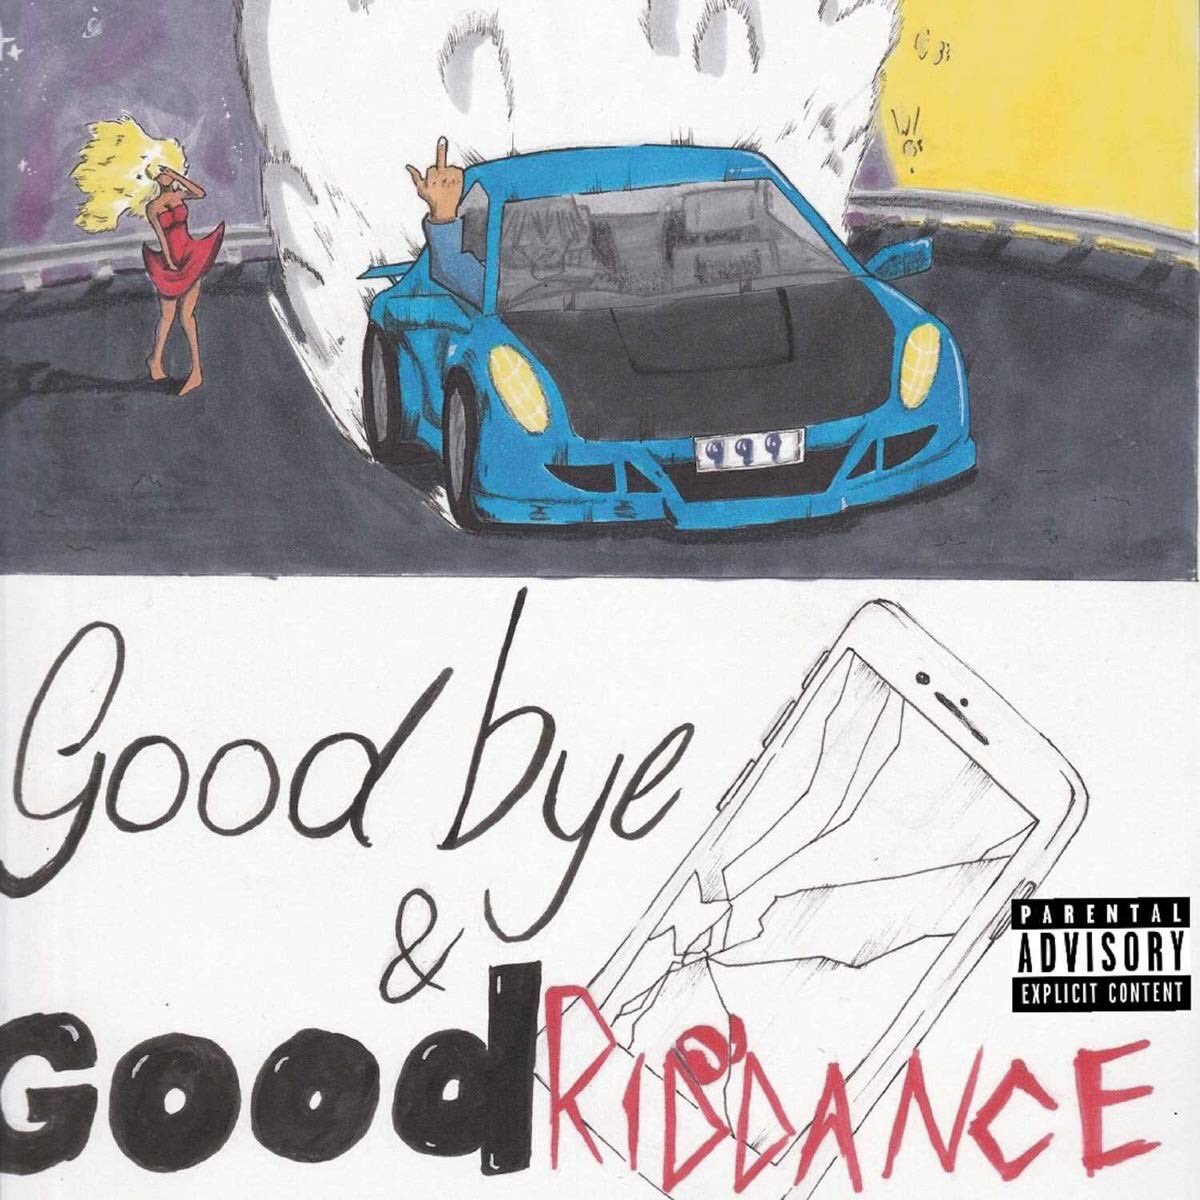 Le 23 mai 2018, Juice WRLD sort son premier album intitulé « Goodbye & Good Riddance » qui comporte les deux morceaux « Lucid Dreams » et « All Girls Are The Same ». Mais aussi des morceaux comme « Wasted » ou « Lean wit Me ».